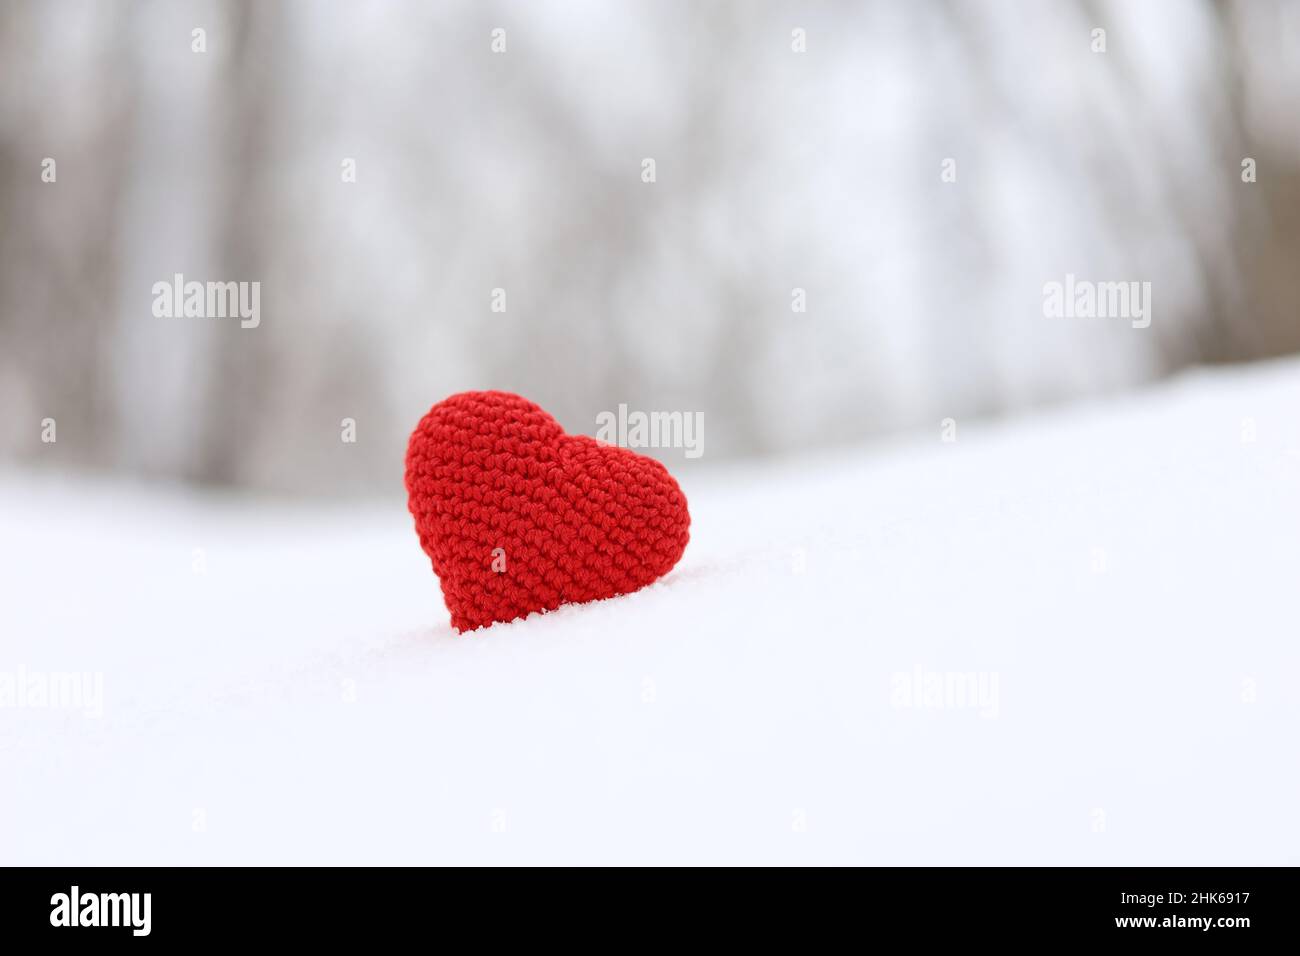 Liebesherz, Valentinskarte, rot gestricktes Symbol der Leidenschaft im Schnee auf Waldhintergrund. Konzept für romantische Veranstaltungen, Feiern oder Winterwetter Stockfoto